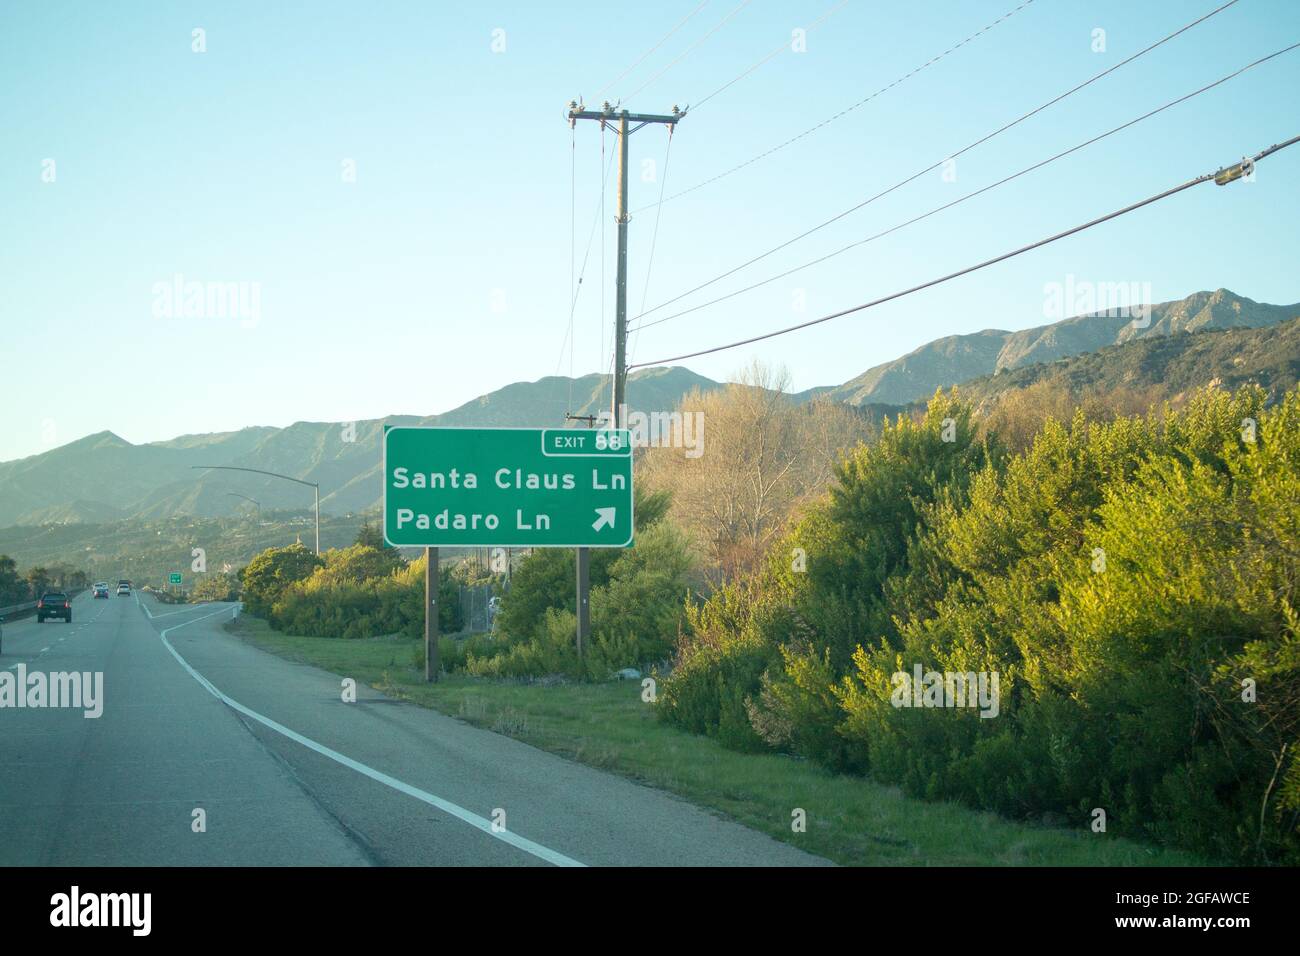 Santa Lane Lane Lane - panneau pour la sortie 88 sur l'autoroute 101, Californie - anciennement partie de la côte de l'autoroute, nommé pour attirer les touristes à thème de Noël Banque D'Images